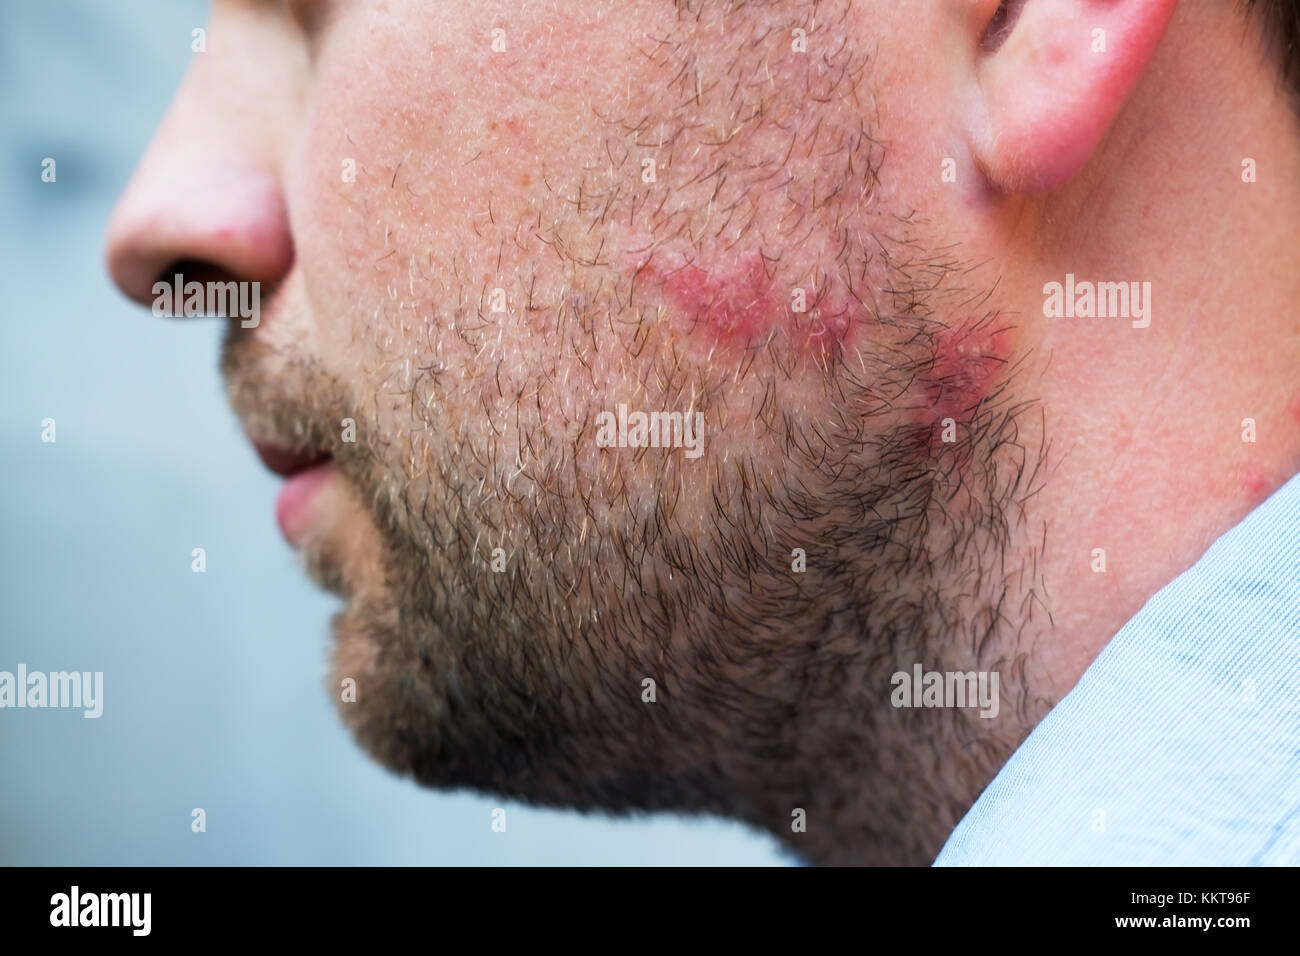 Rash reazione da farmaco o allergia alimentare sul volto di uomo caucasico Foto Stock